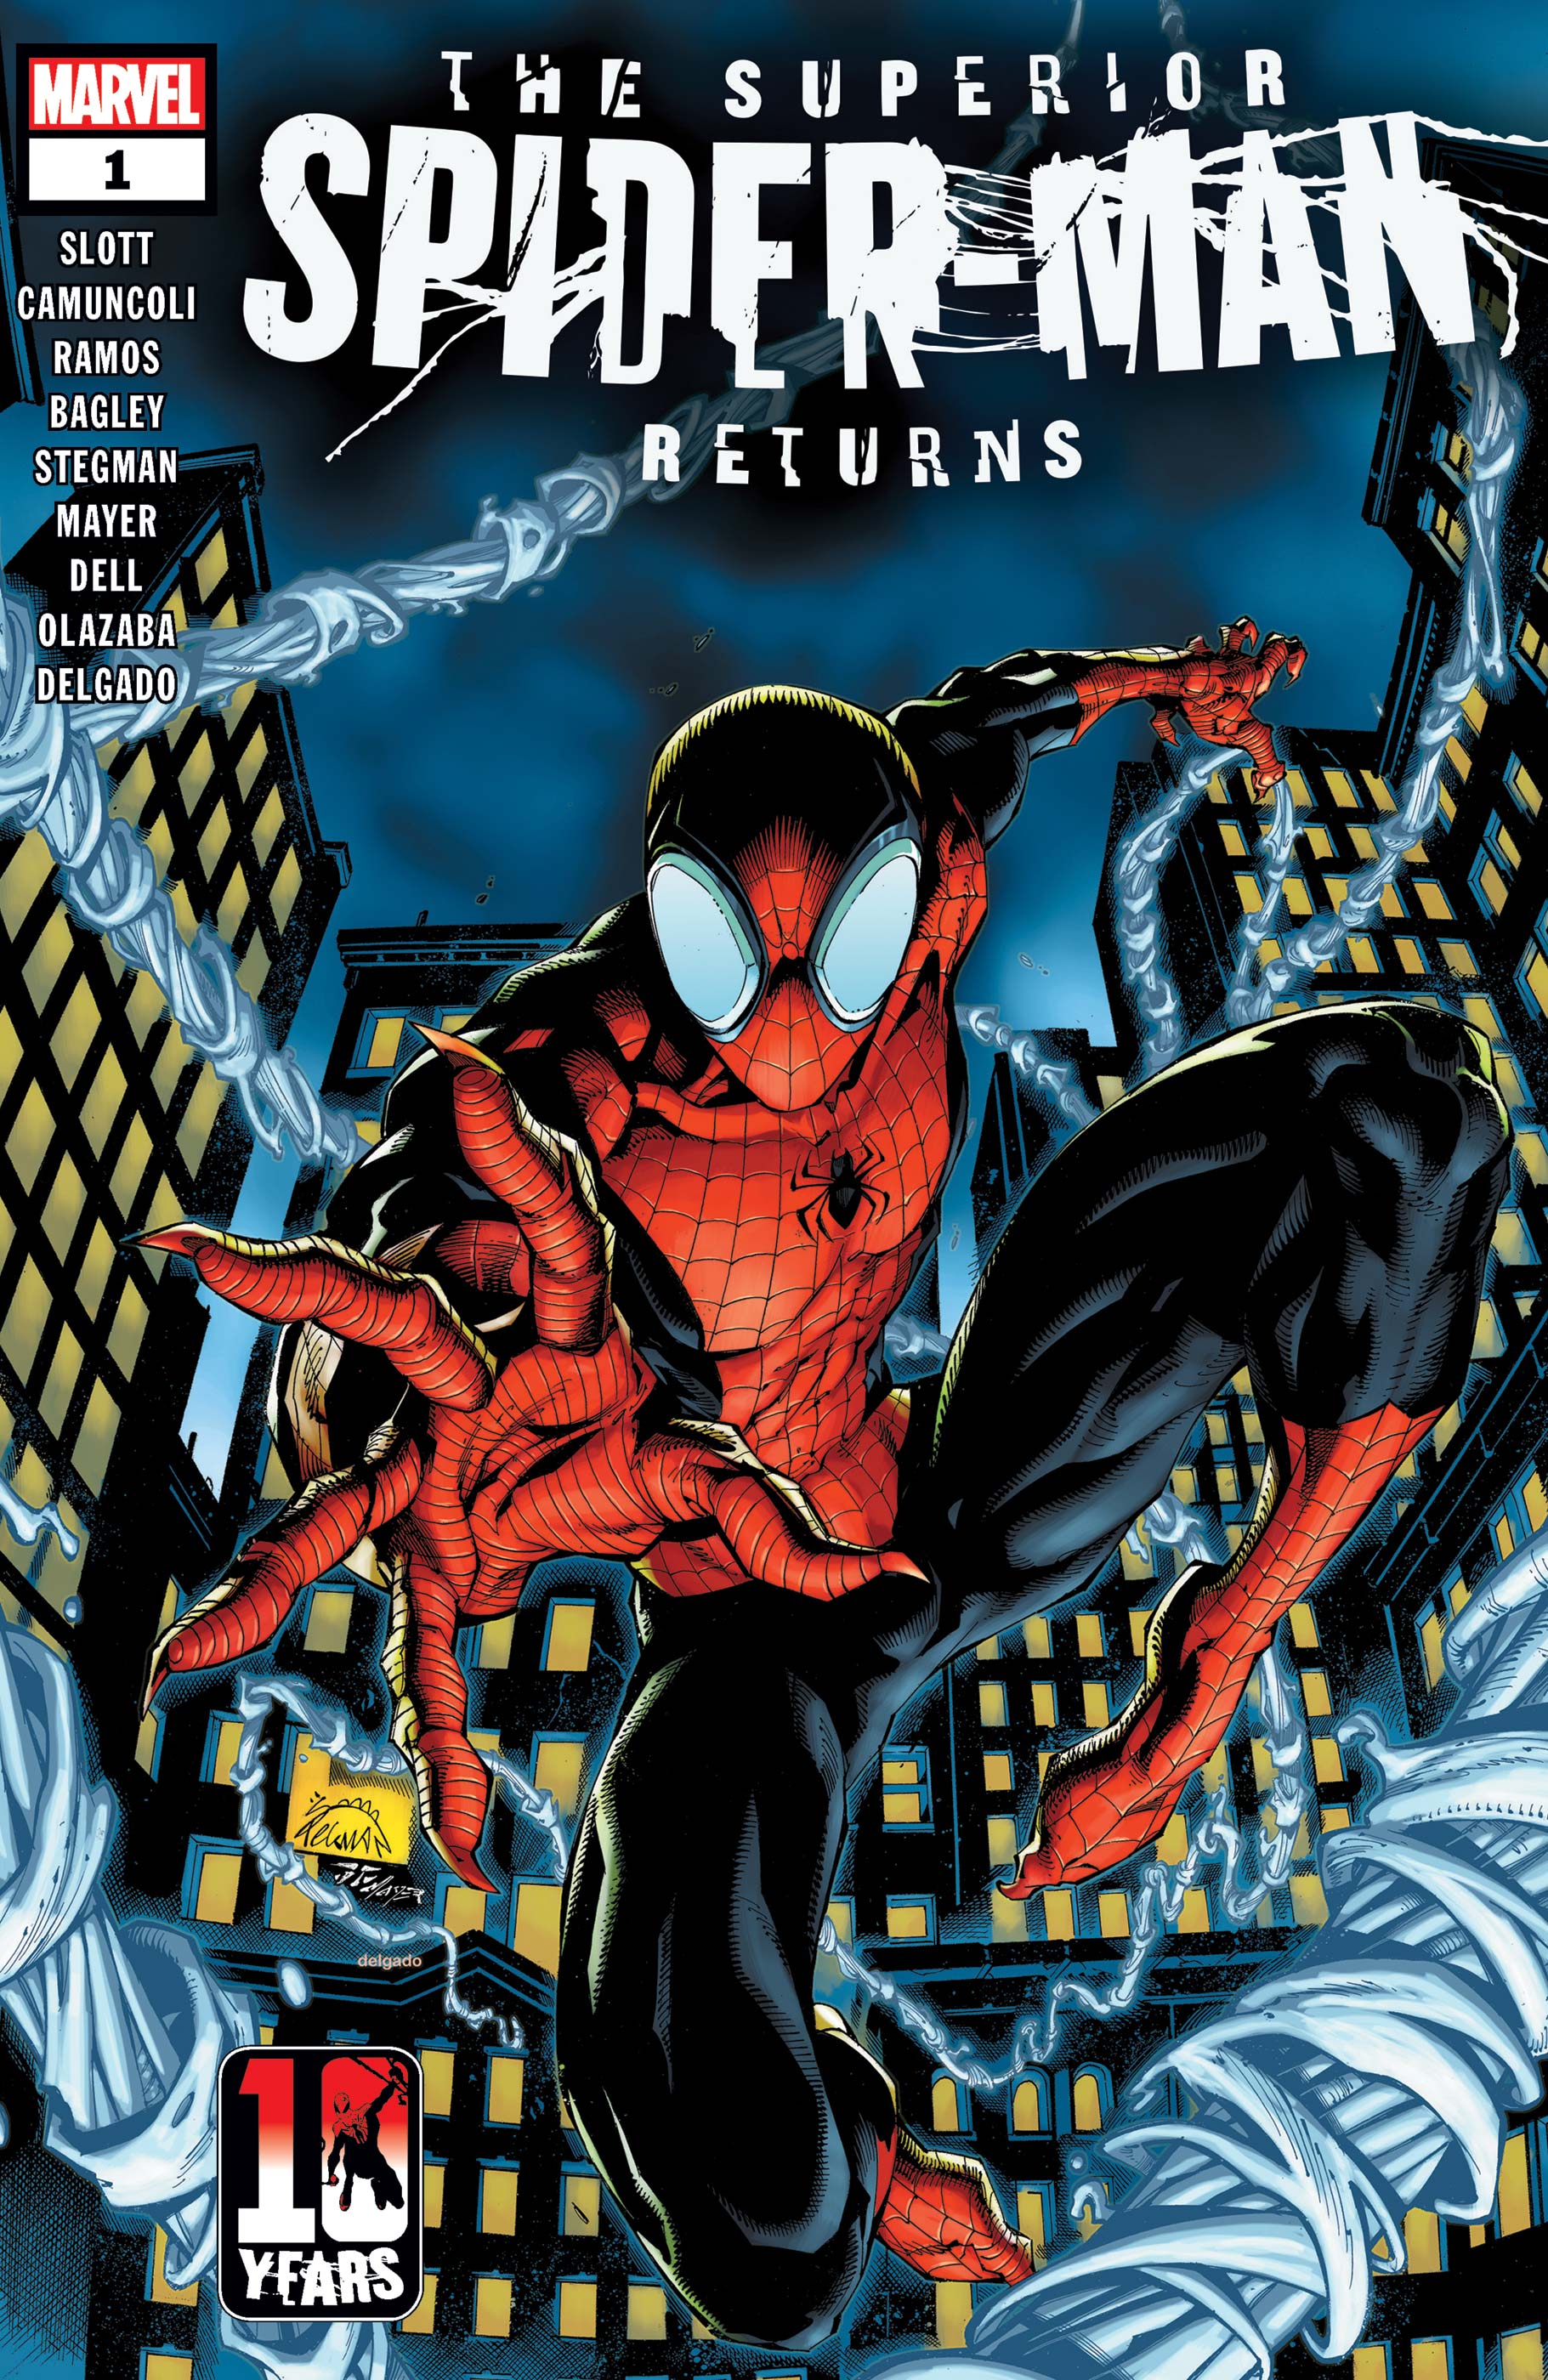 A Superior Spider-Man visszatér #1 borítója